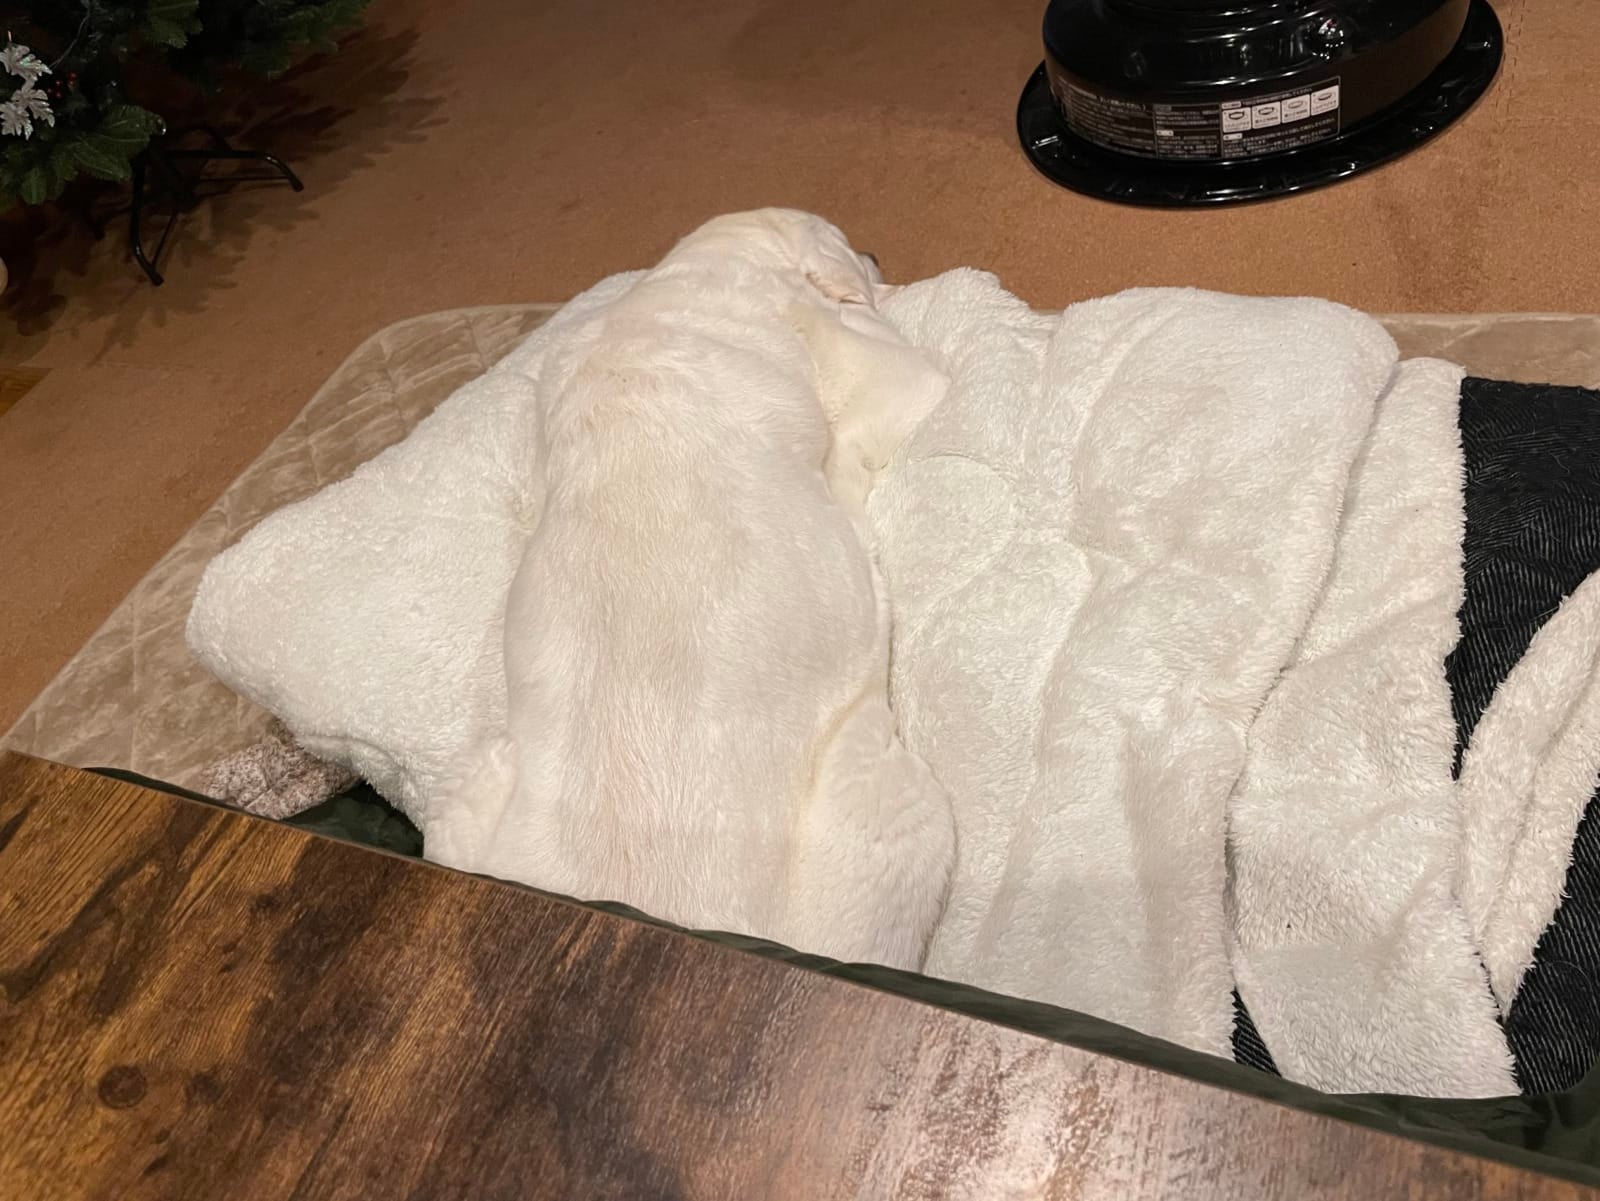 หมาญี่ปุ่น ลาบราดอร์สีขาว ผ้าห่ม